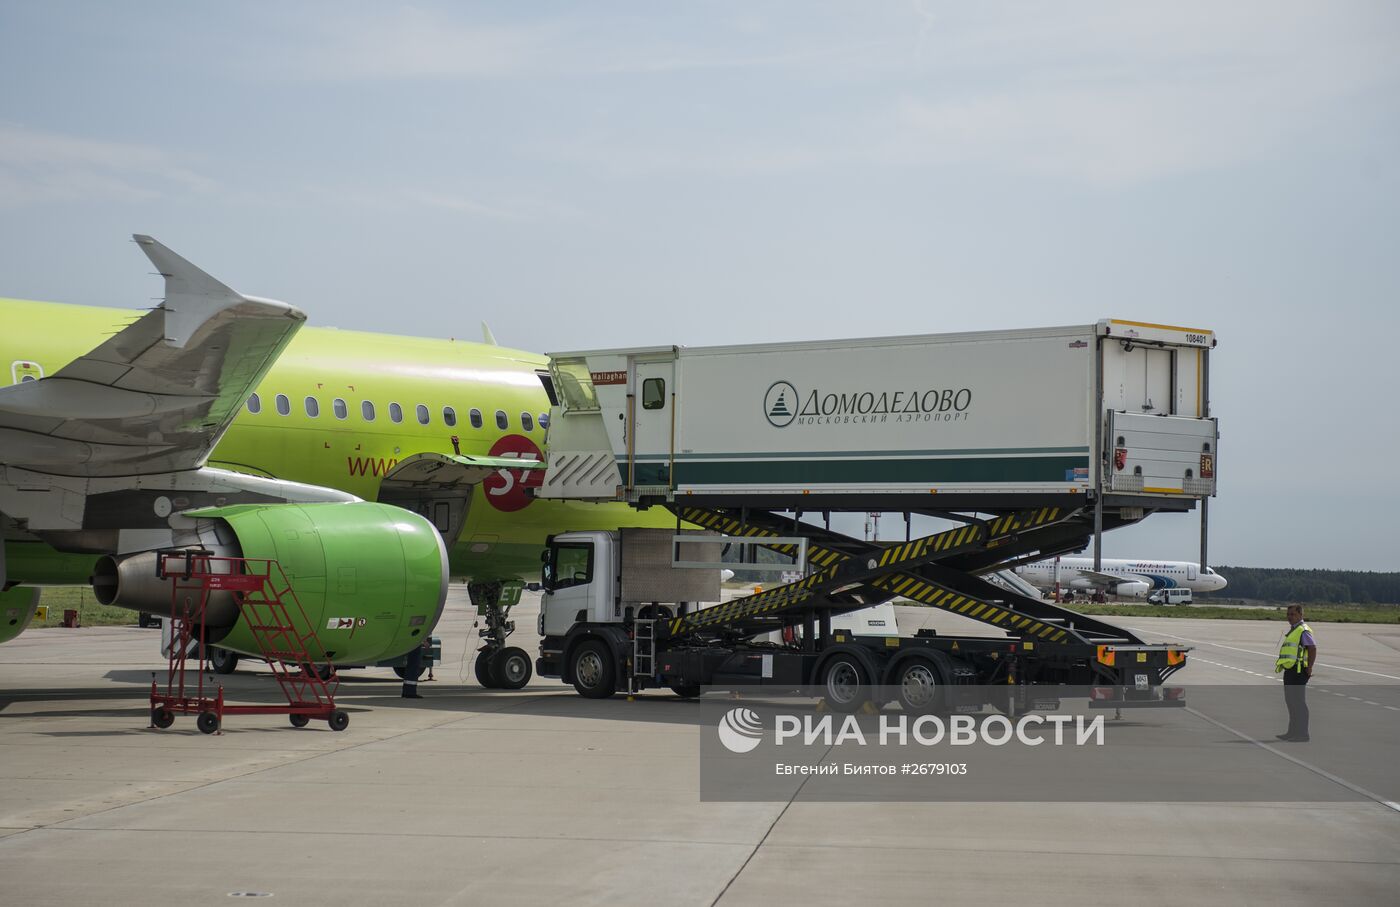 Обслуживание самолетов в аэропорту "Домодедово"